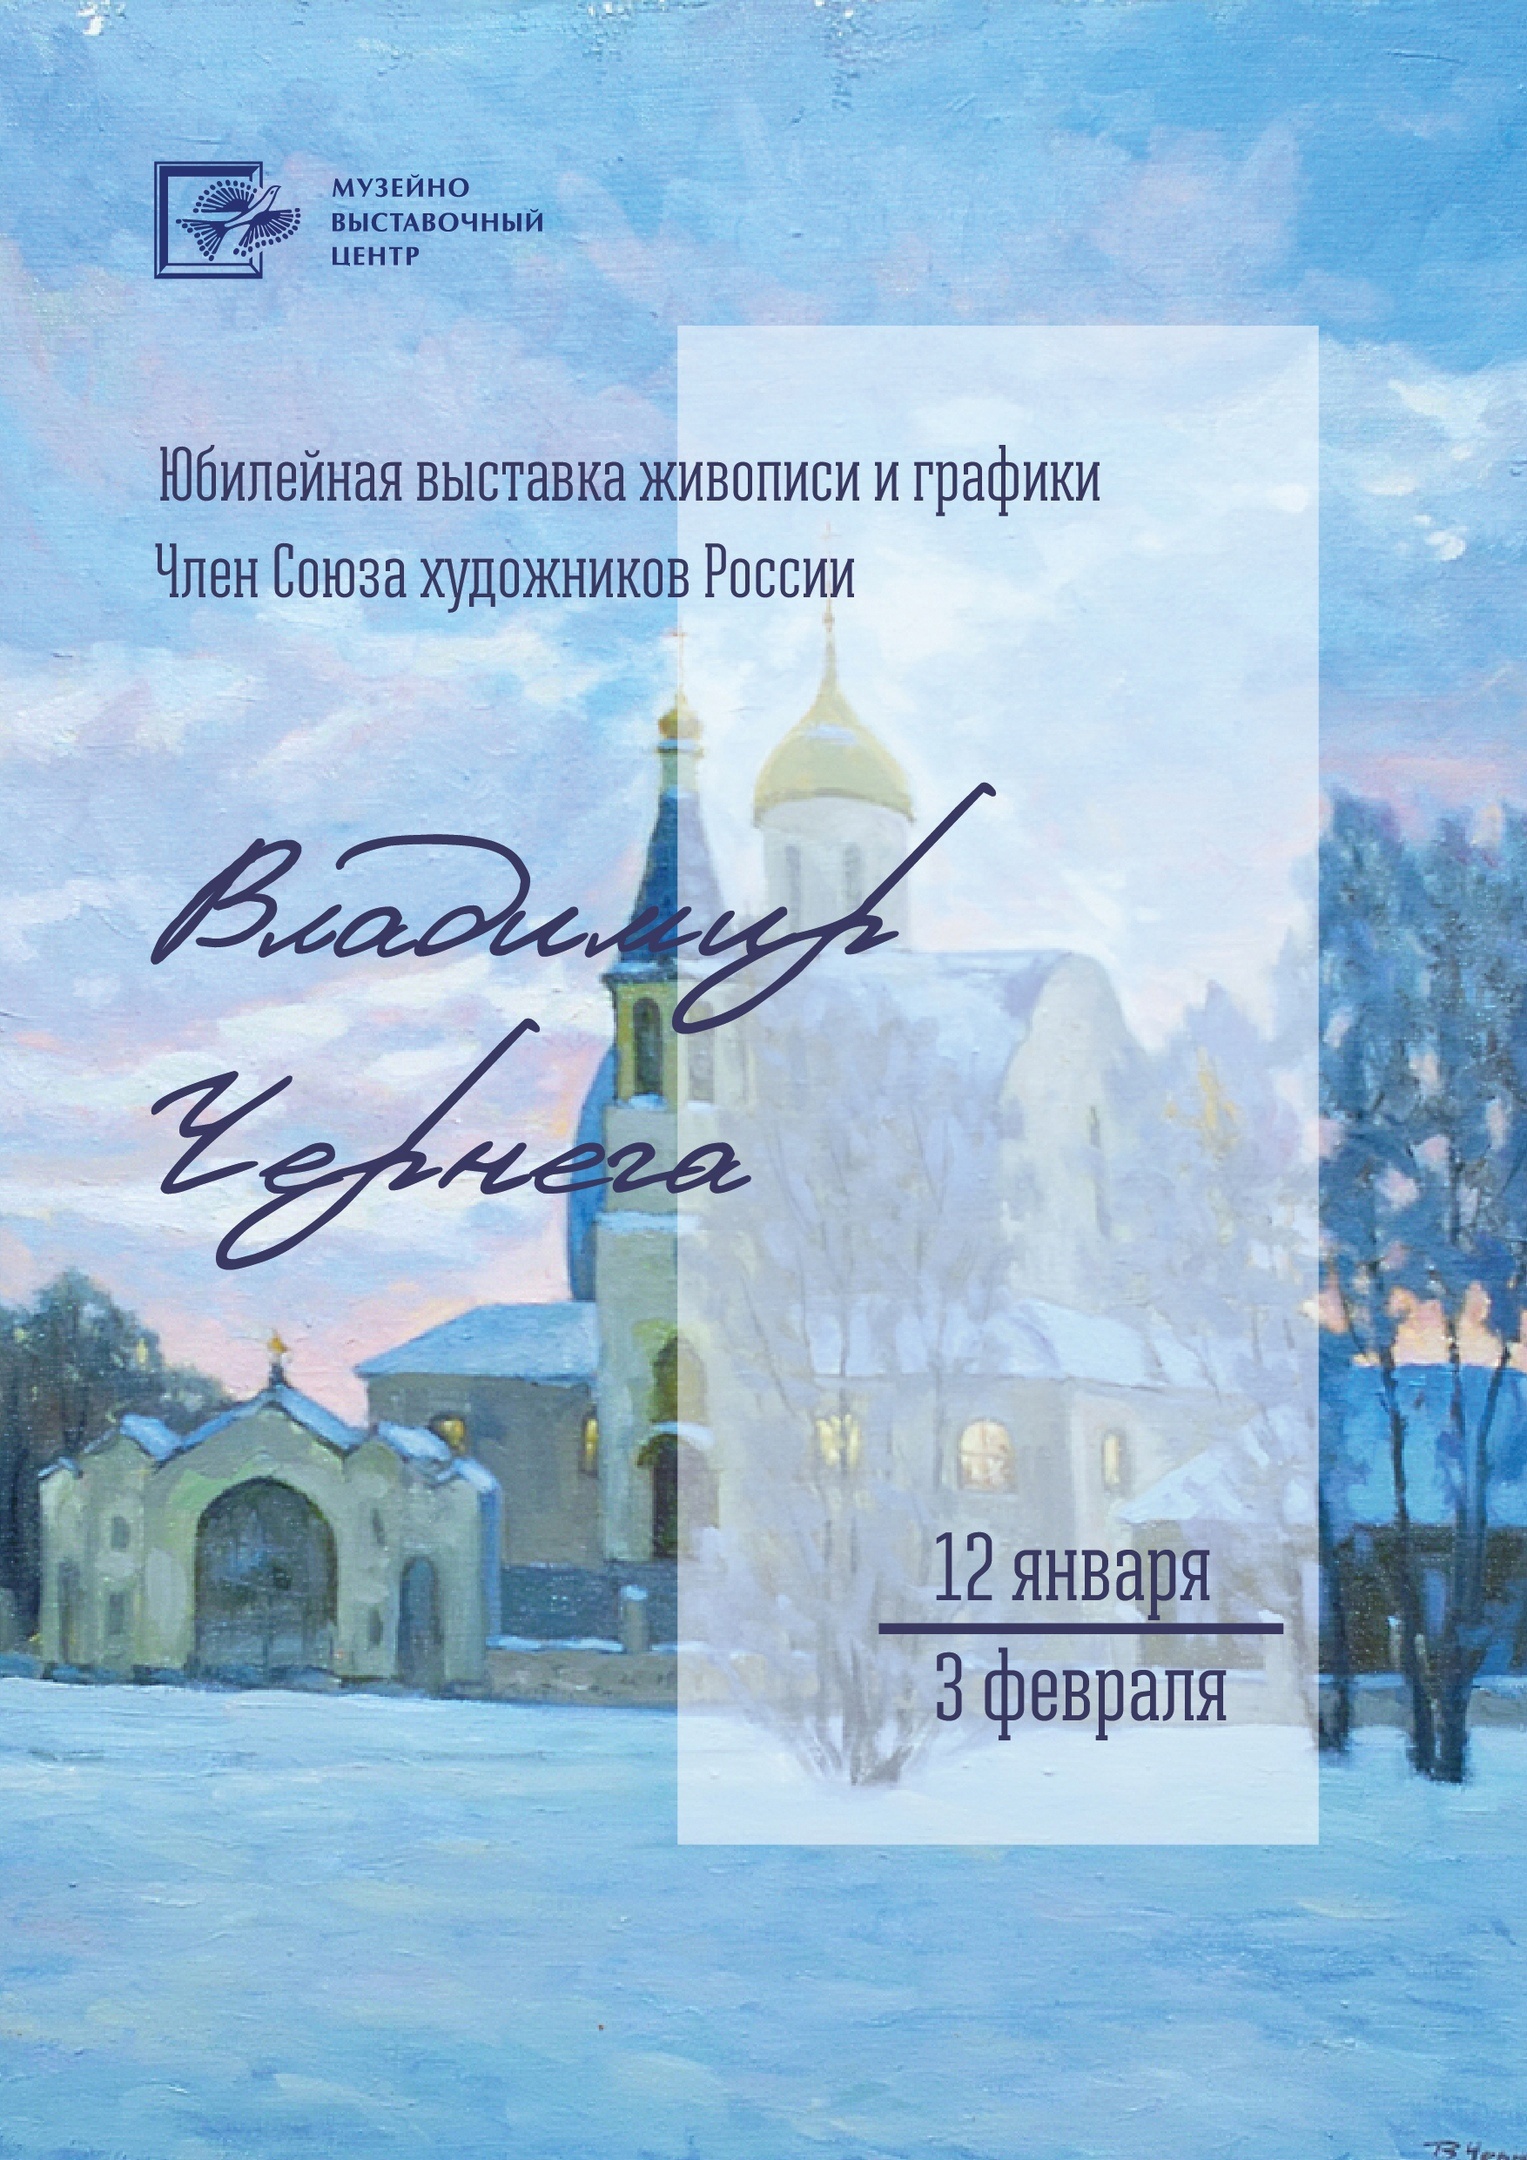 Выставка живописи Владимира Чернеги